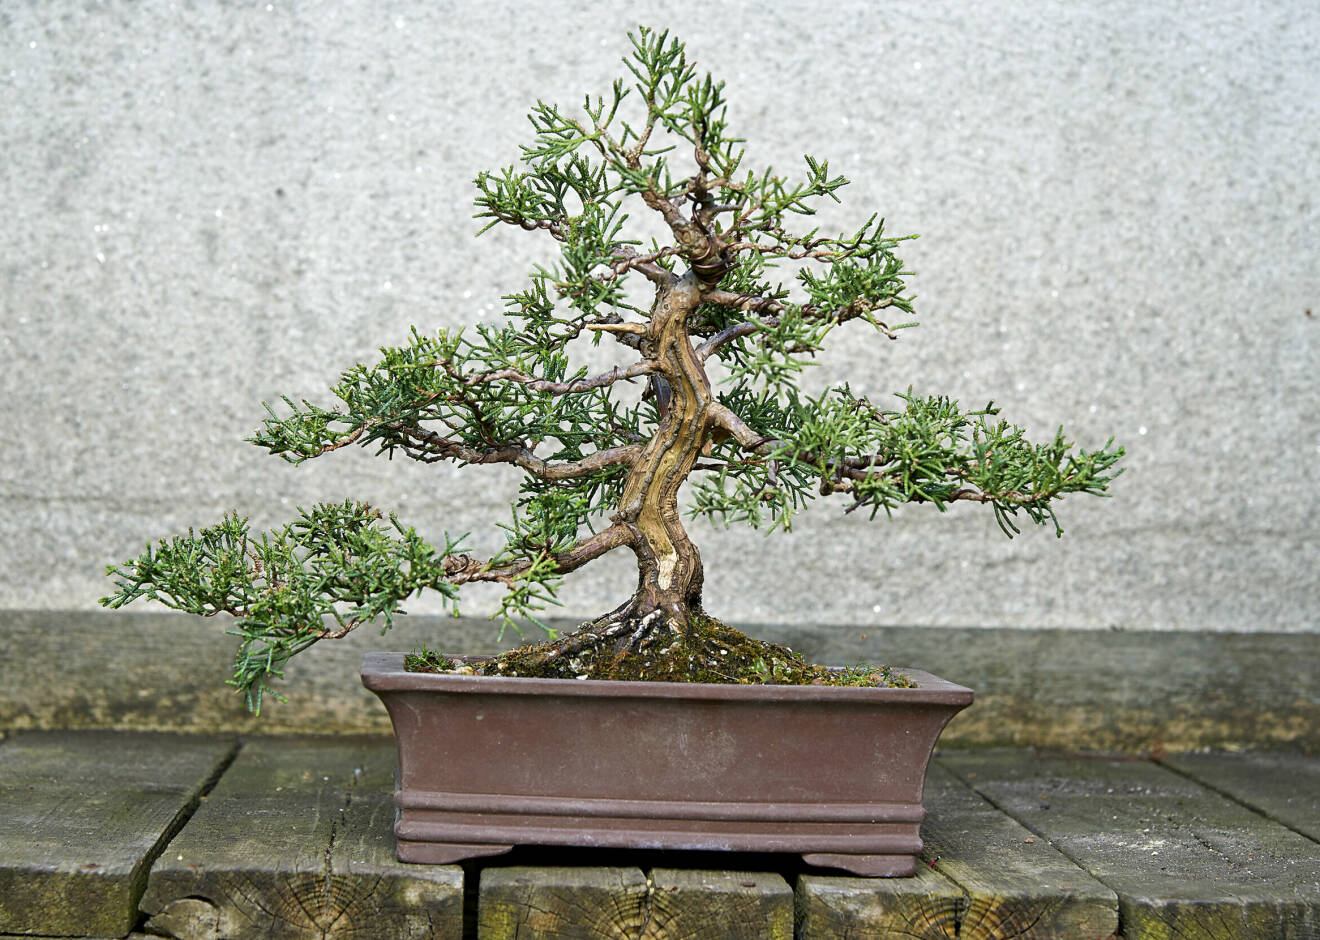 Det här är en bonsai av en kinesisk en. Även här har Maria Arborelius med hjälp av död
ved mitt på stammen skapat intrycket av ett mycket gammal träd.